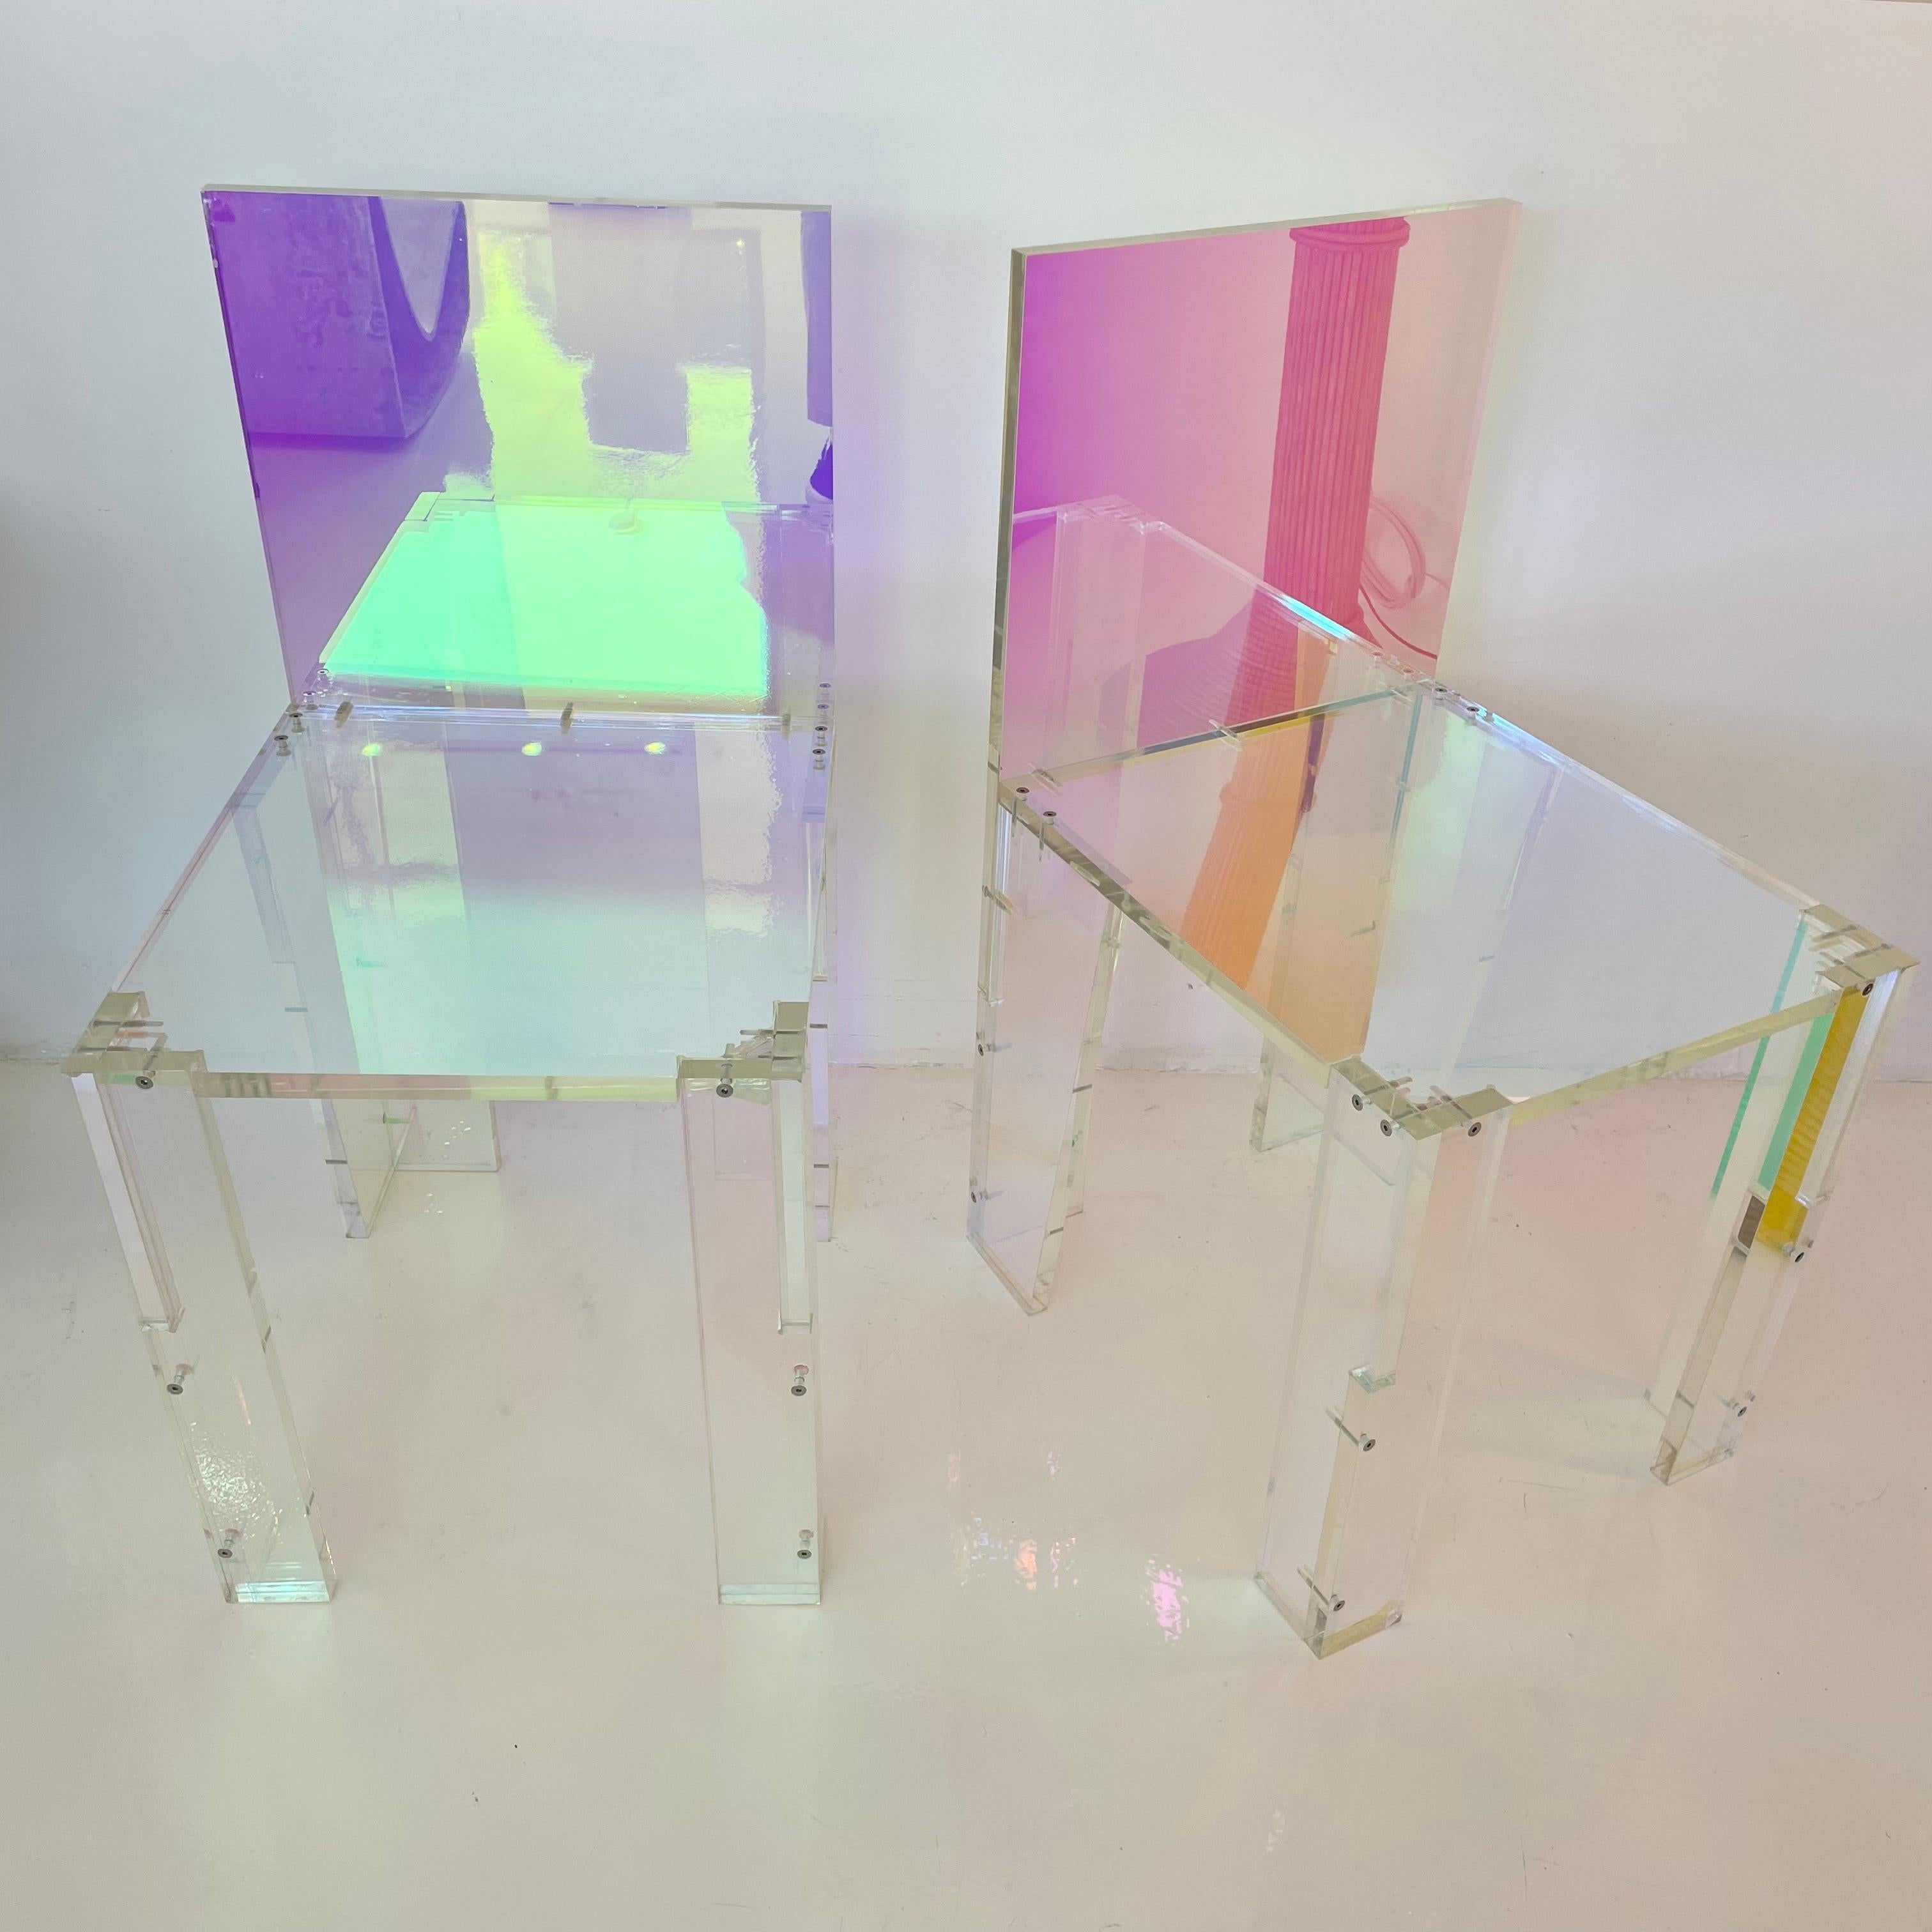 Paire de chaises sculpturales en acrylique réalisées par Diogo et Juliette Felippelli. Ils ont fondé Joogii en 2015 pour créer des objets et des œuvres d'art qui cultivent un environnement vibrant, avec l'intention d'apporter une histoire, une